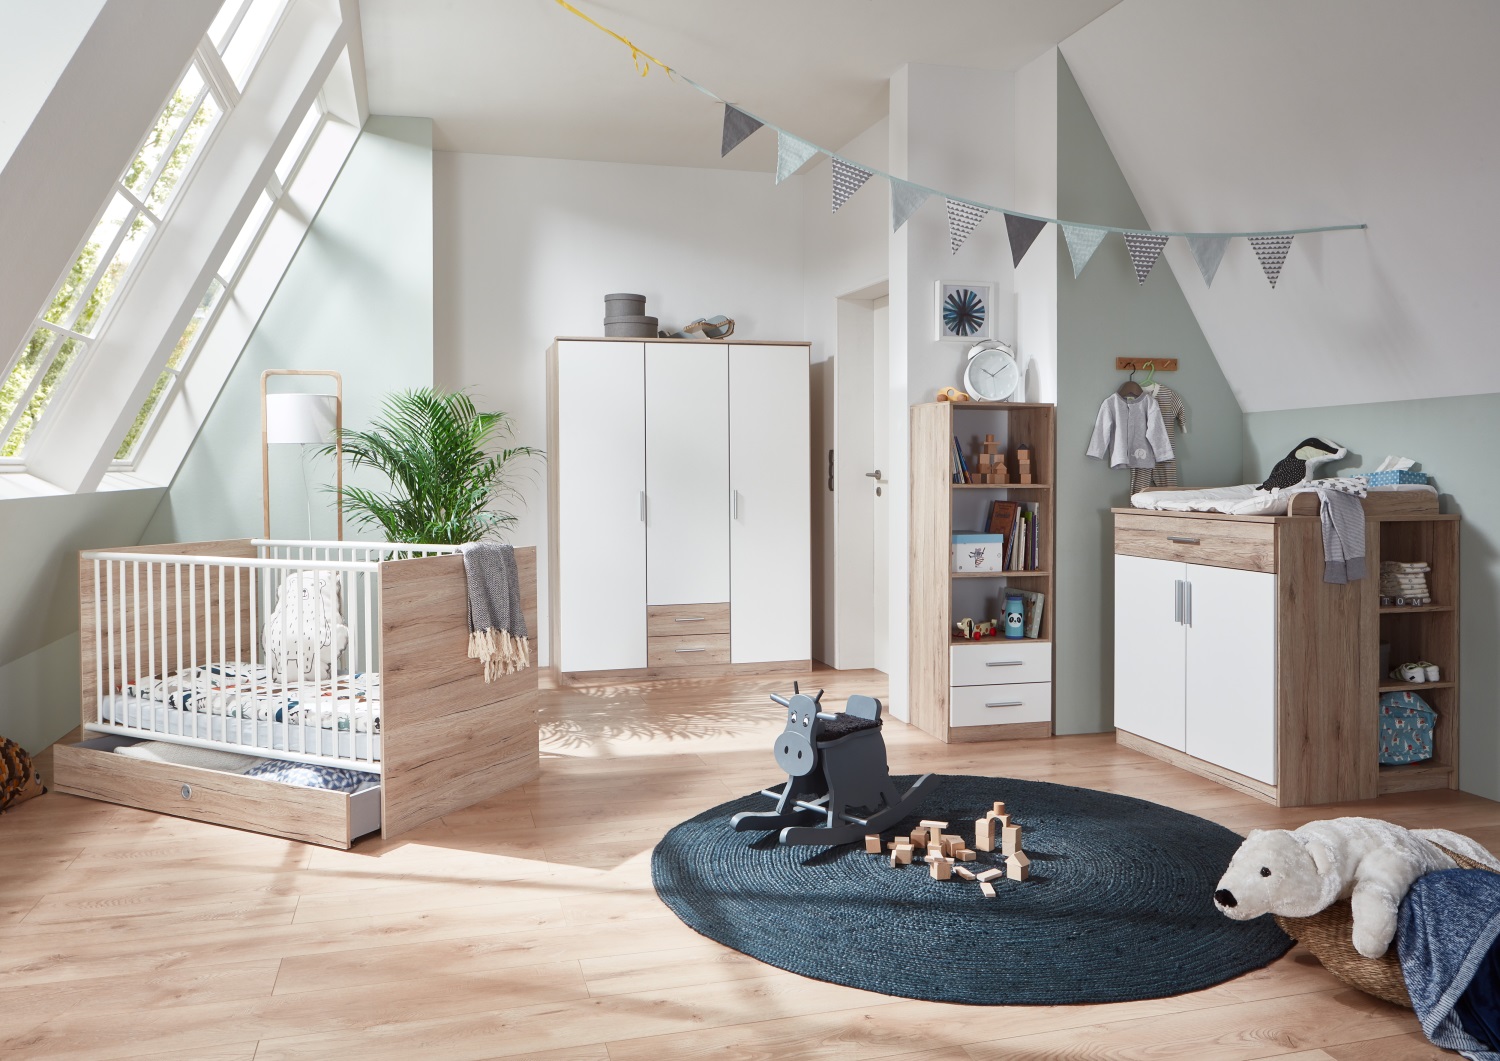 möbel-direkt Babyzimmer Ronny in Old Style Weiß 6 teiliges Megaset mit Schrank Wickelkommode und Wandregal … Bett mit Lattenrost und Umbauseiten 